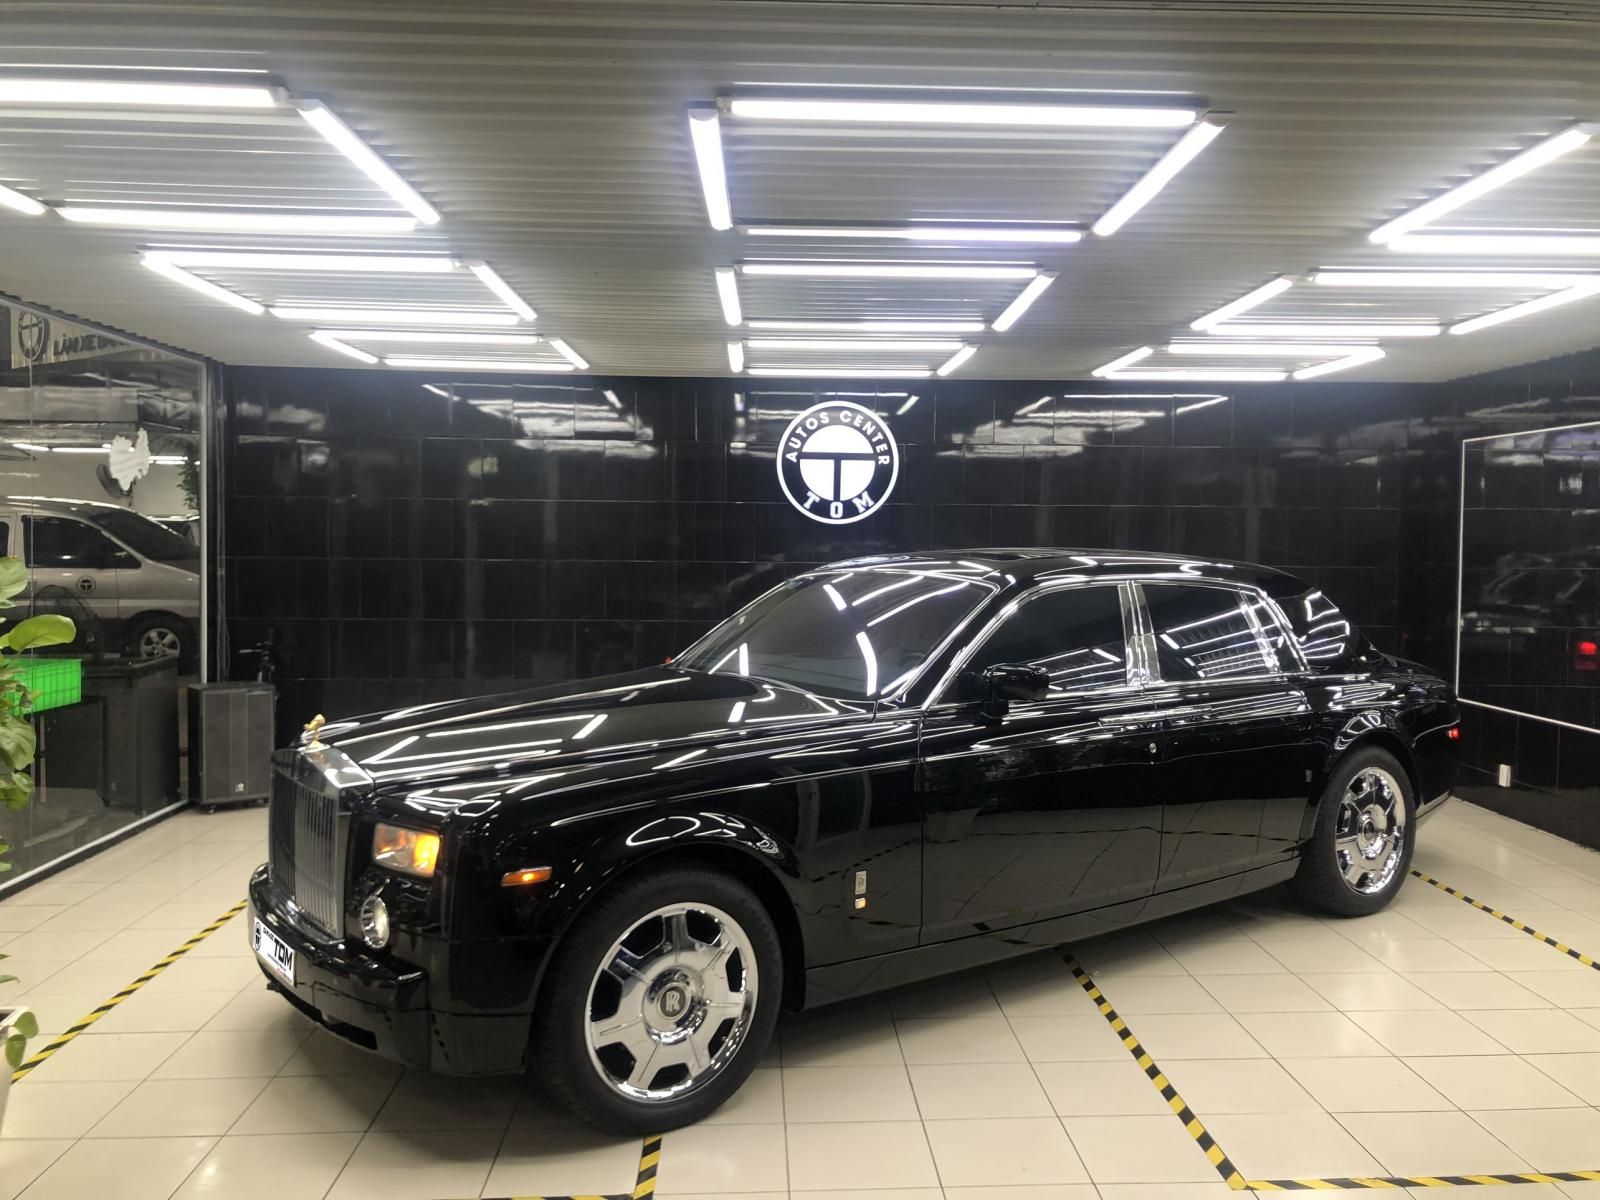 Bán Rolls-Royce Phantom, đi 27000, đăng ký 2013 đẳng cấp